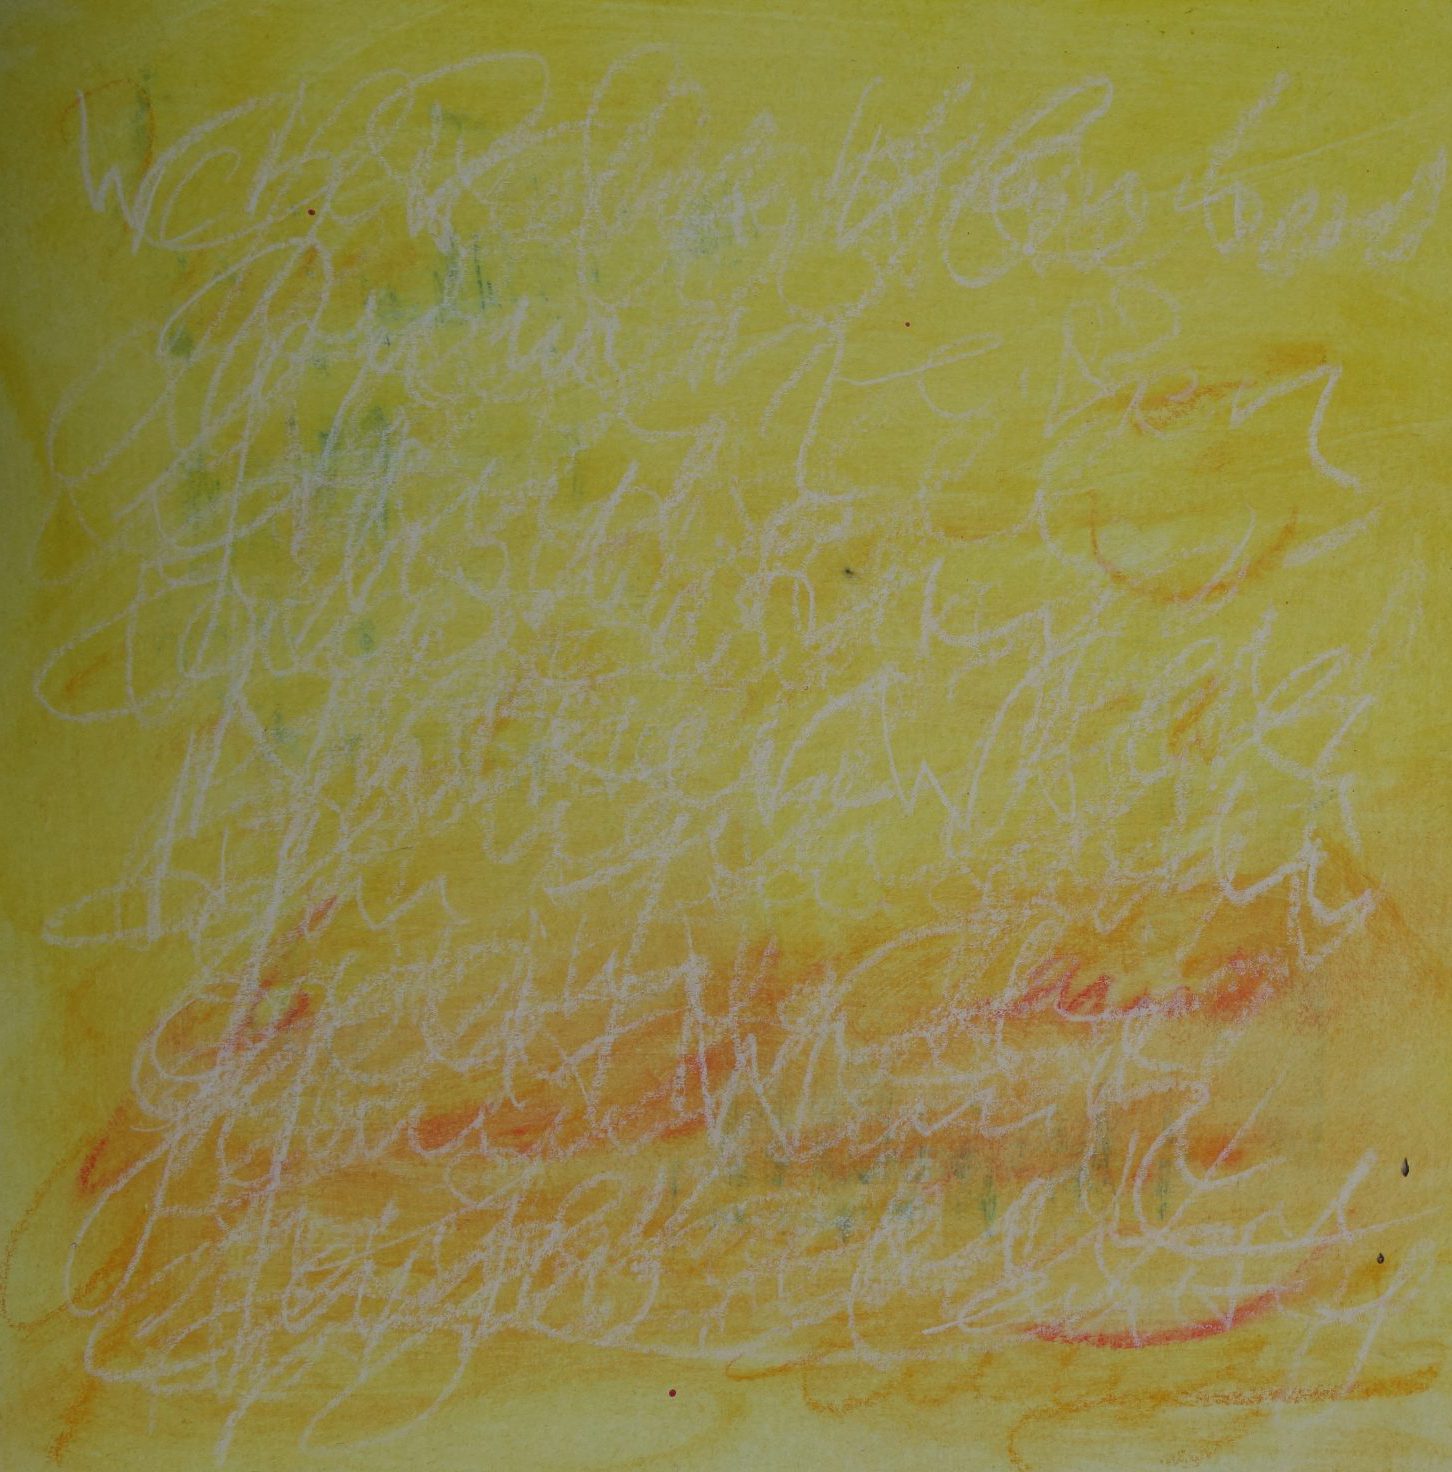 DIeses Foto zeigt ein quadratiches gelbes Gemälde. Im unteren Bereich sieht man orange. Im Vordergrund sieht man eine weiße Schrift, die jedoch nicht lesbar ist.